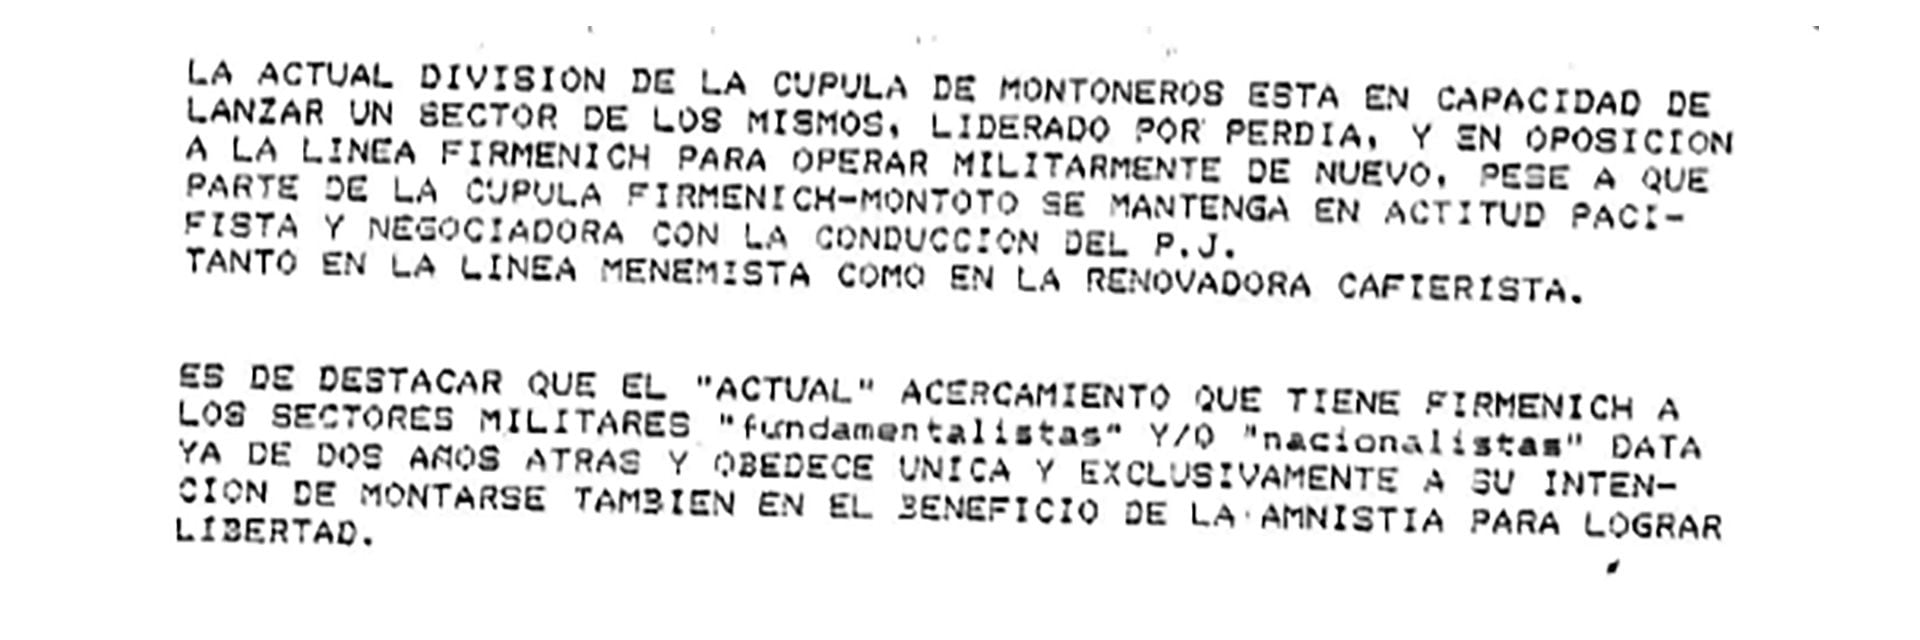 Además del ERP el informe trata la aparente división de Montoneros (Archivo Juan Bautista Yofre)